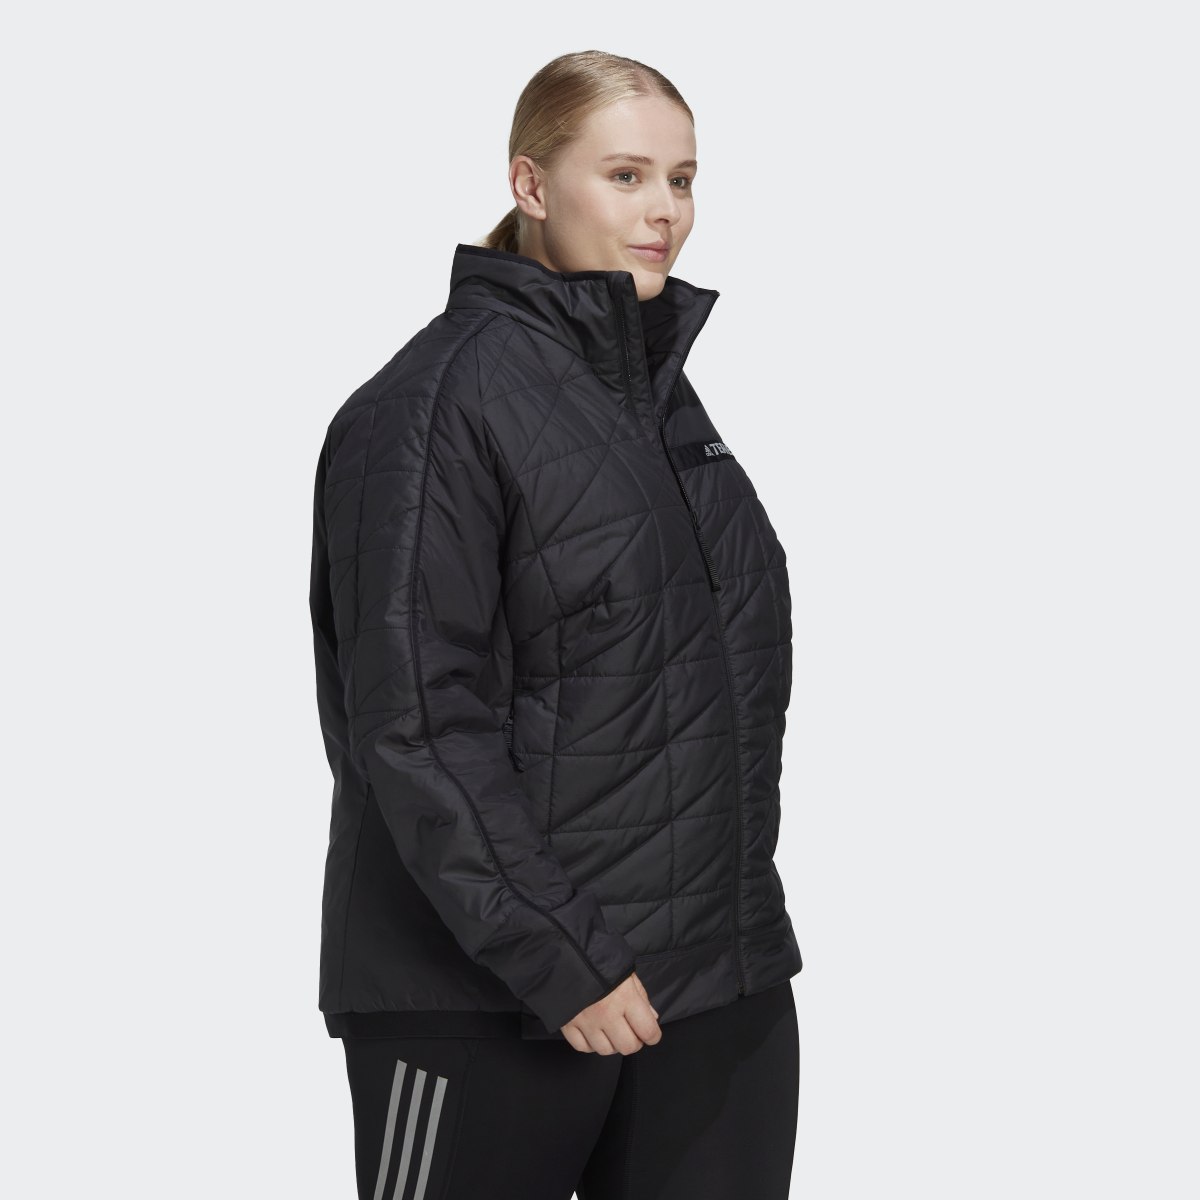 Adidas TERREX Multi Insulated Jacke – Große Größen. 5